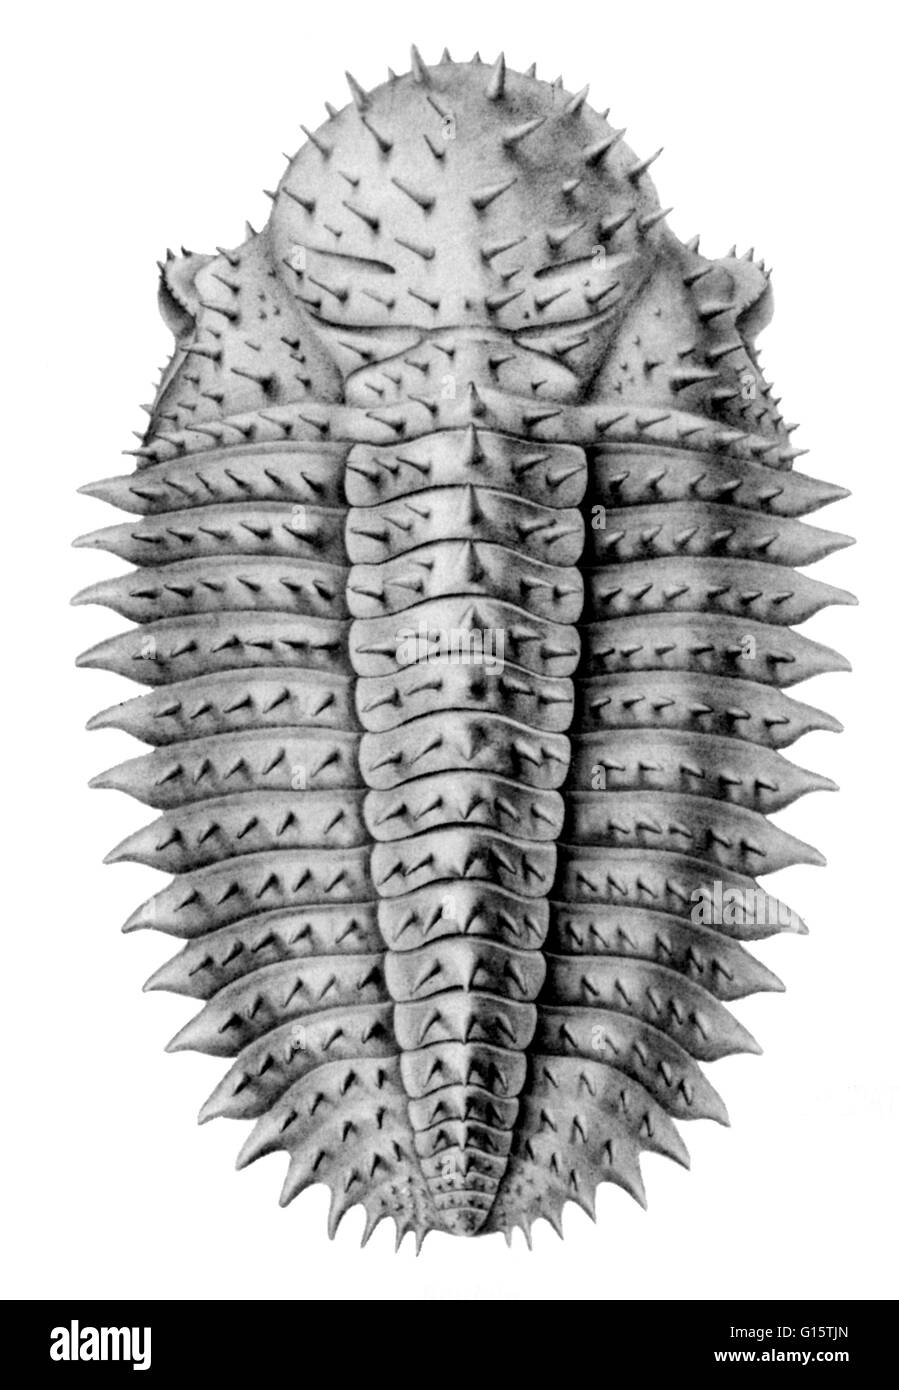 Un trilobata è un estinto, piccoli artropodi del subphylum Trilobita che visse durante il paleozoico Ser e sono estremamente comuni come fossili. Trilobiti aveva un duro rivestimento esterno suddiviso in tre nel senso della lunghezza e della larghezza di tre sezioni (exosk segmentata Foto Stock